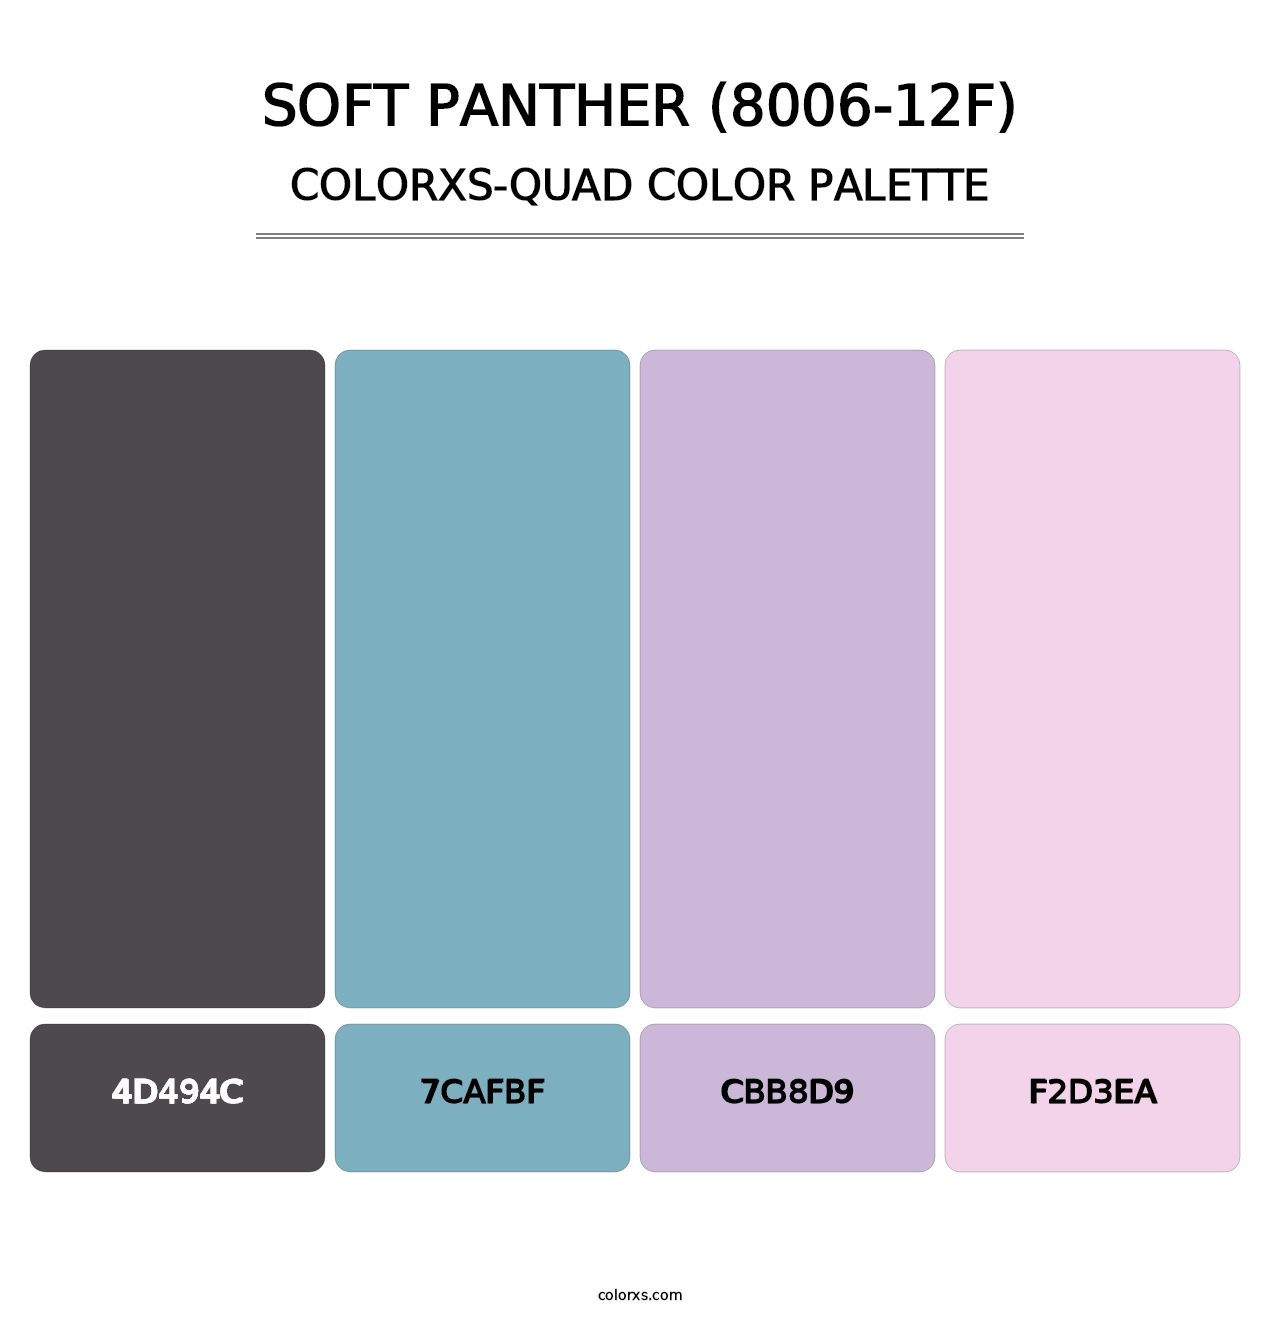 Soft Panther (8006-12F) - Colorxs Quad Palette